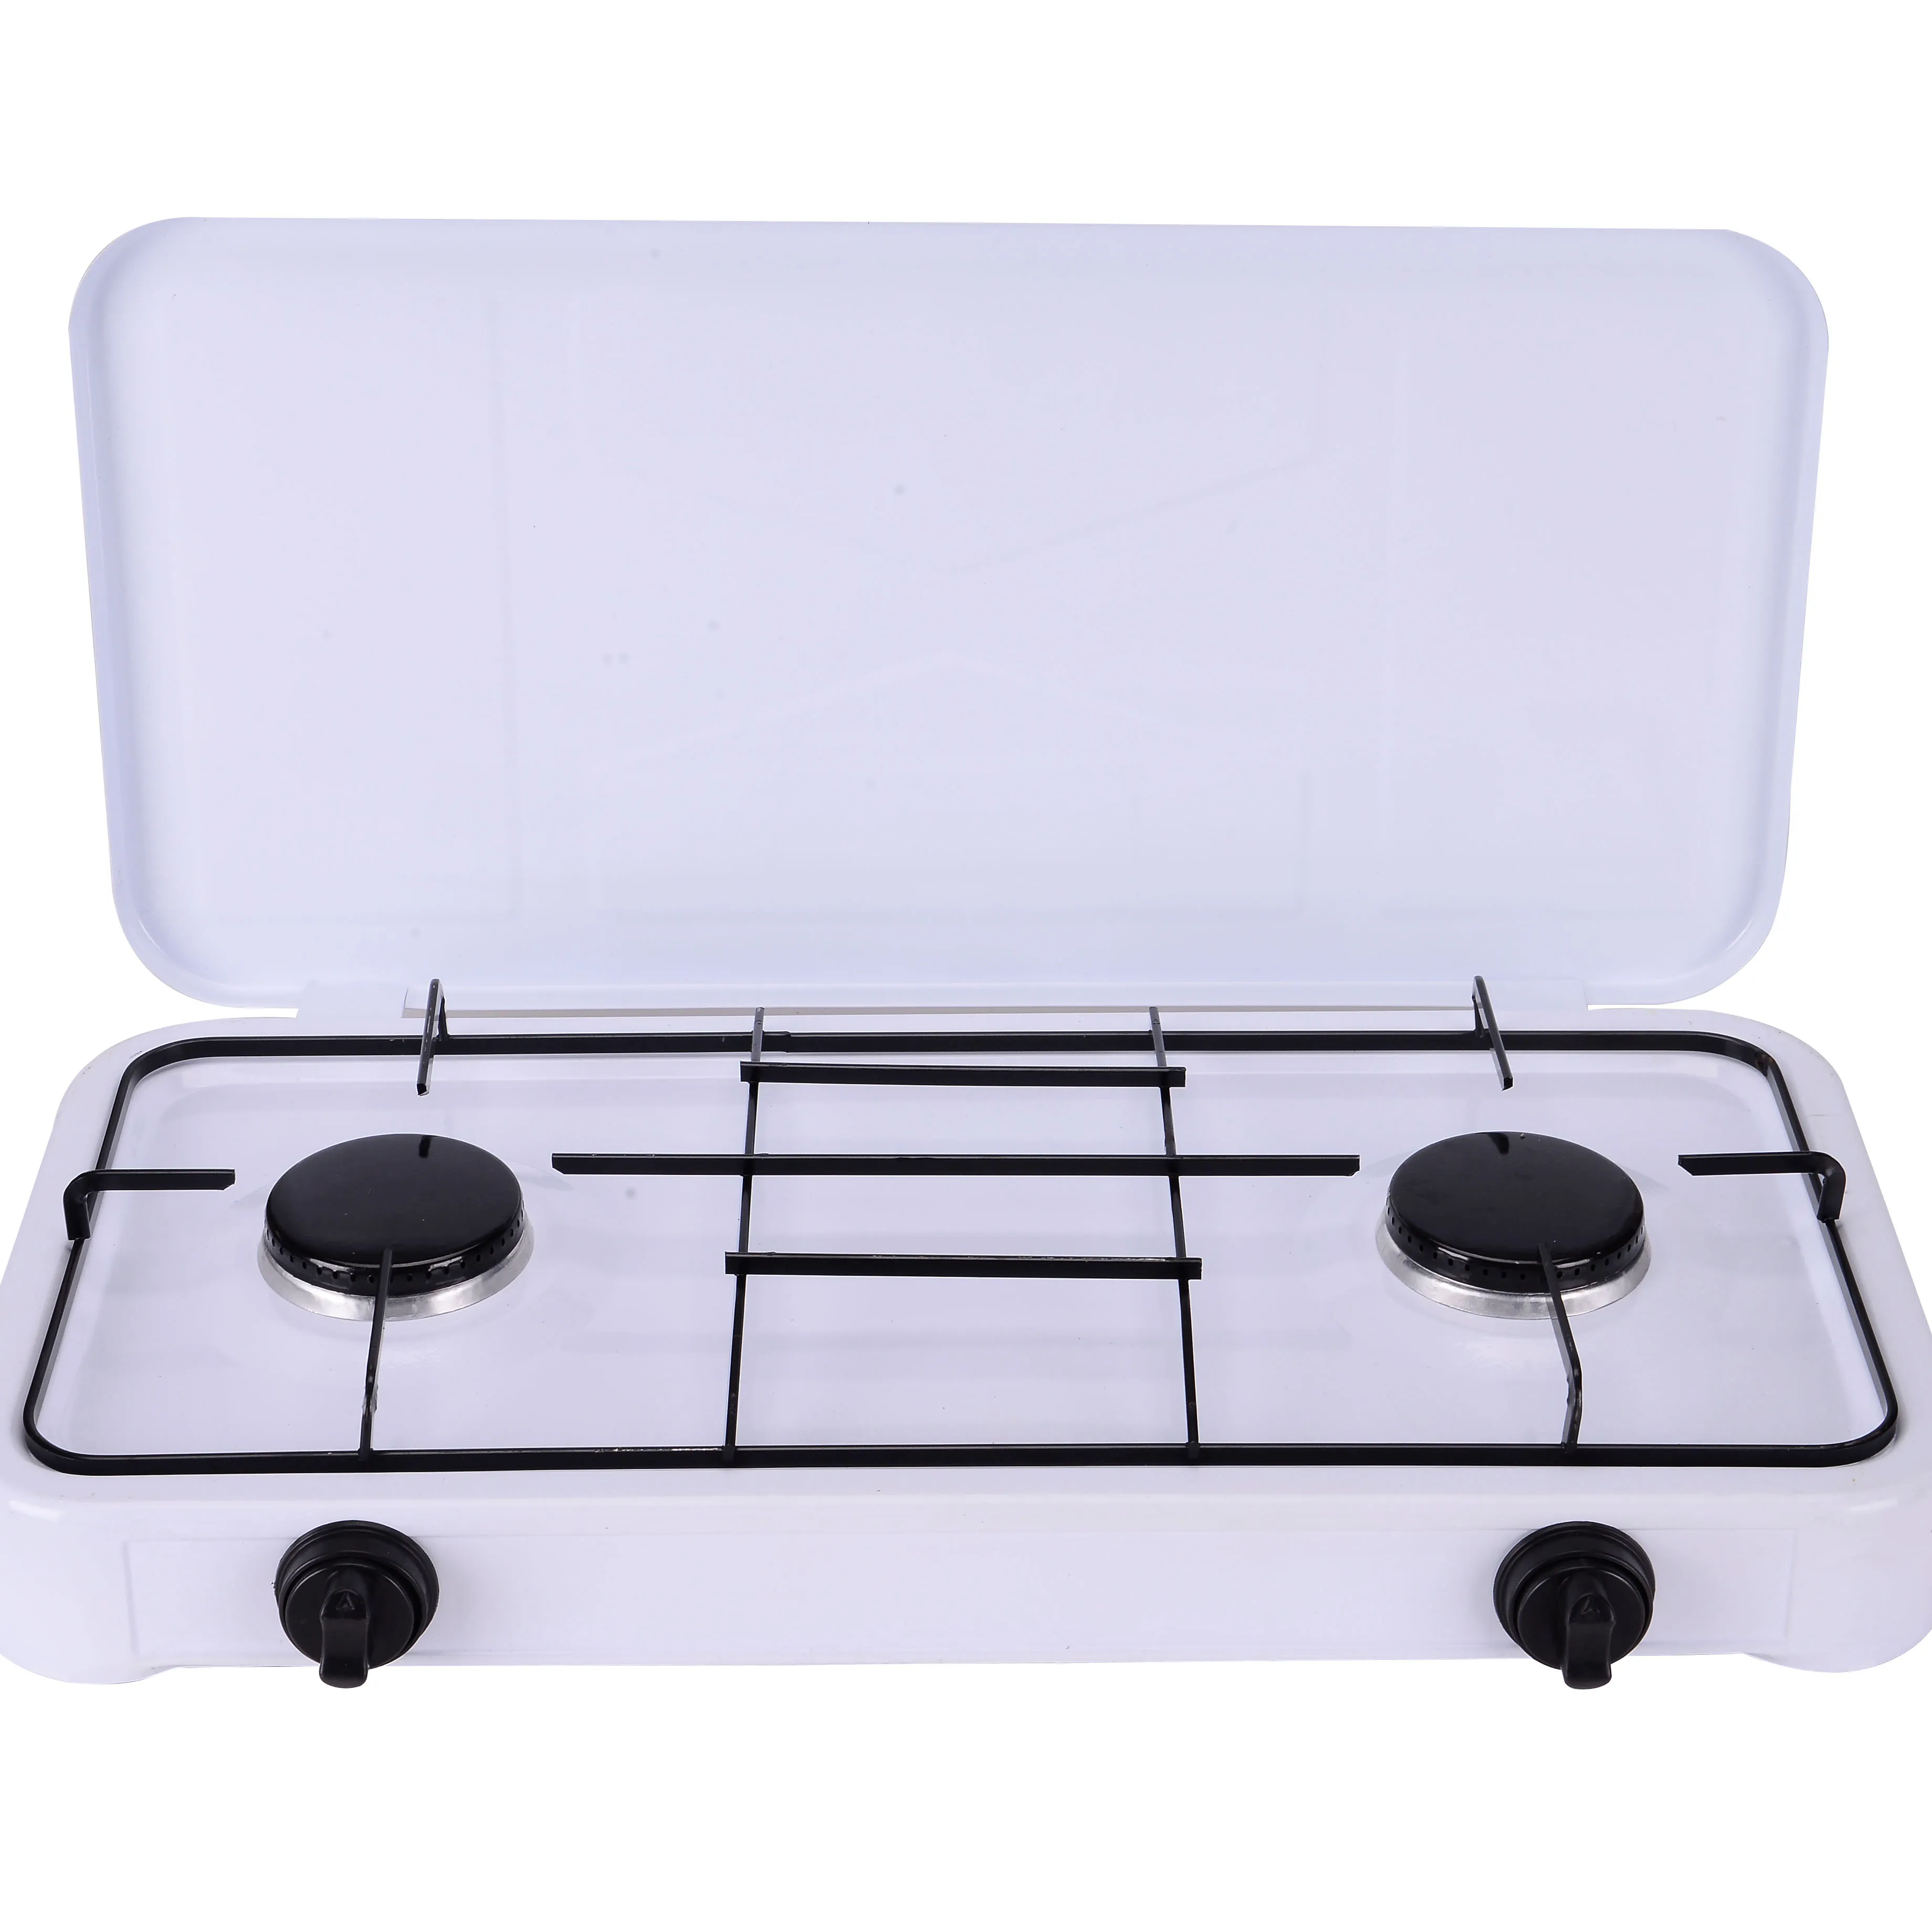 2 3 4 bruciatore pannello bianco cast di ferro nero griglia auto di accensione da tavolo in stile europeo top fornello a gas stufa